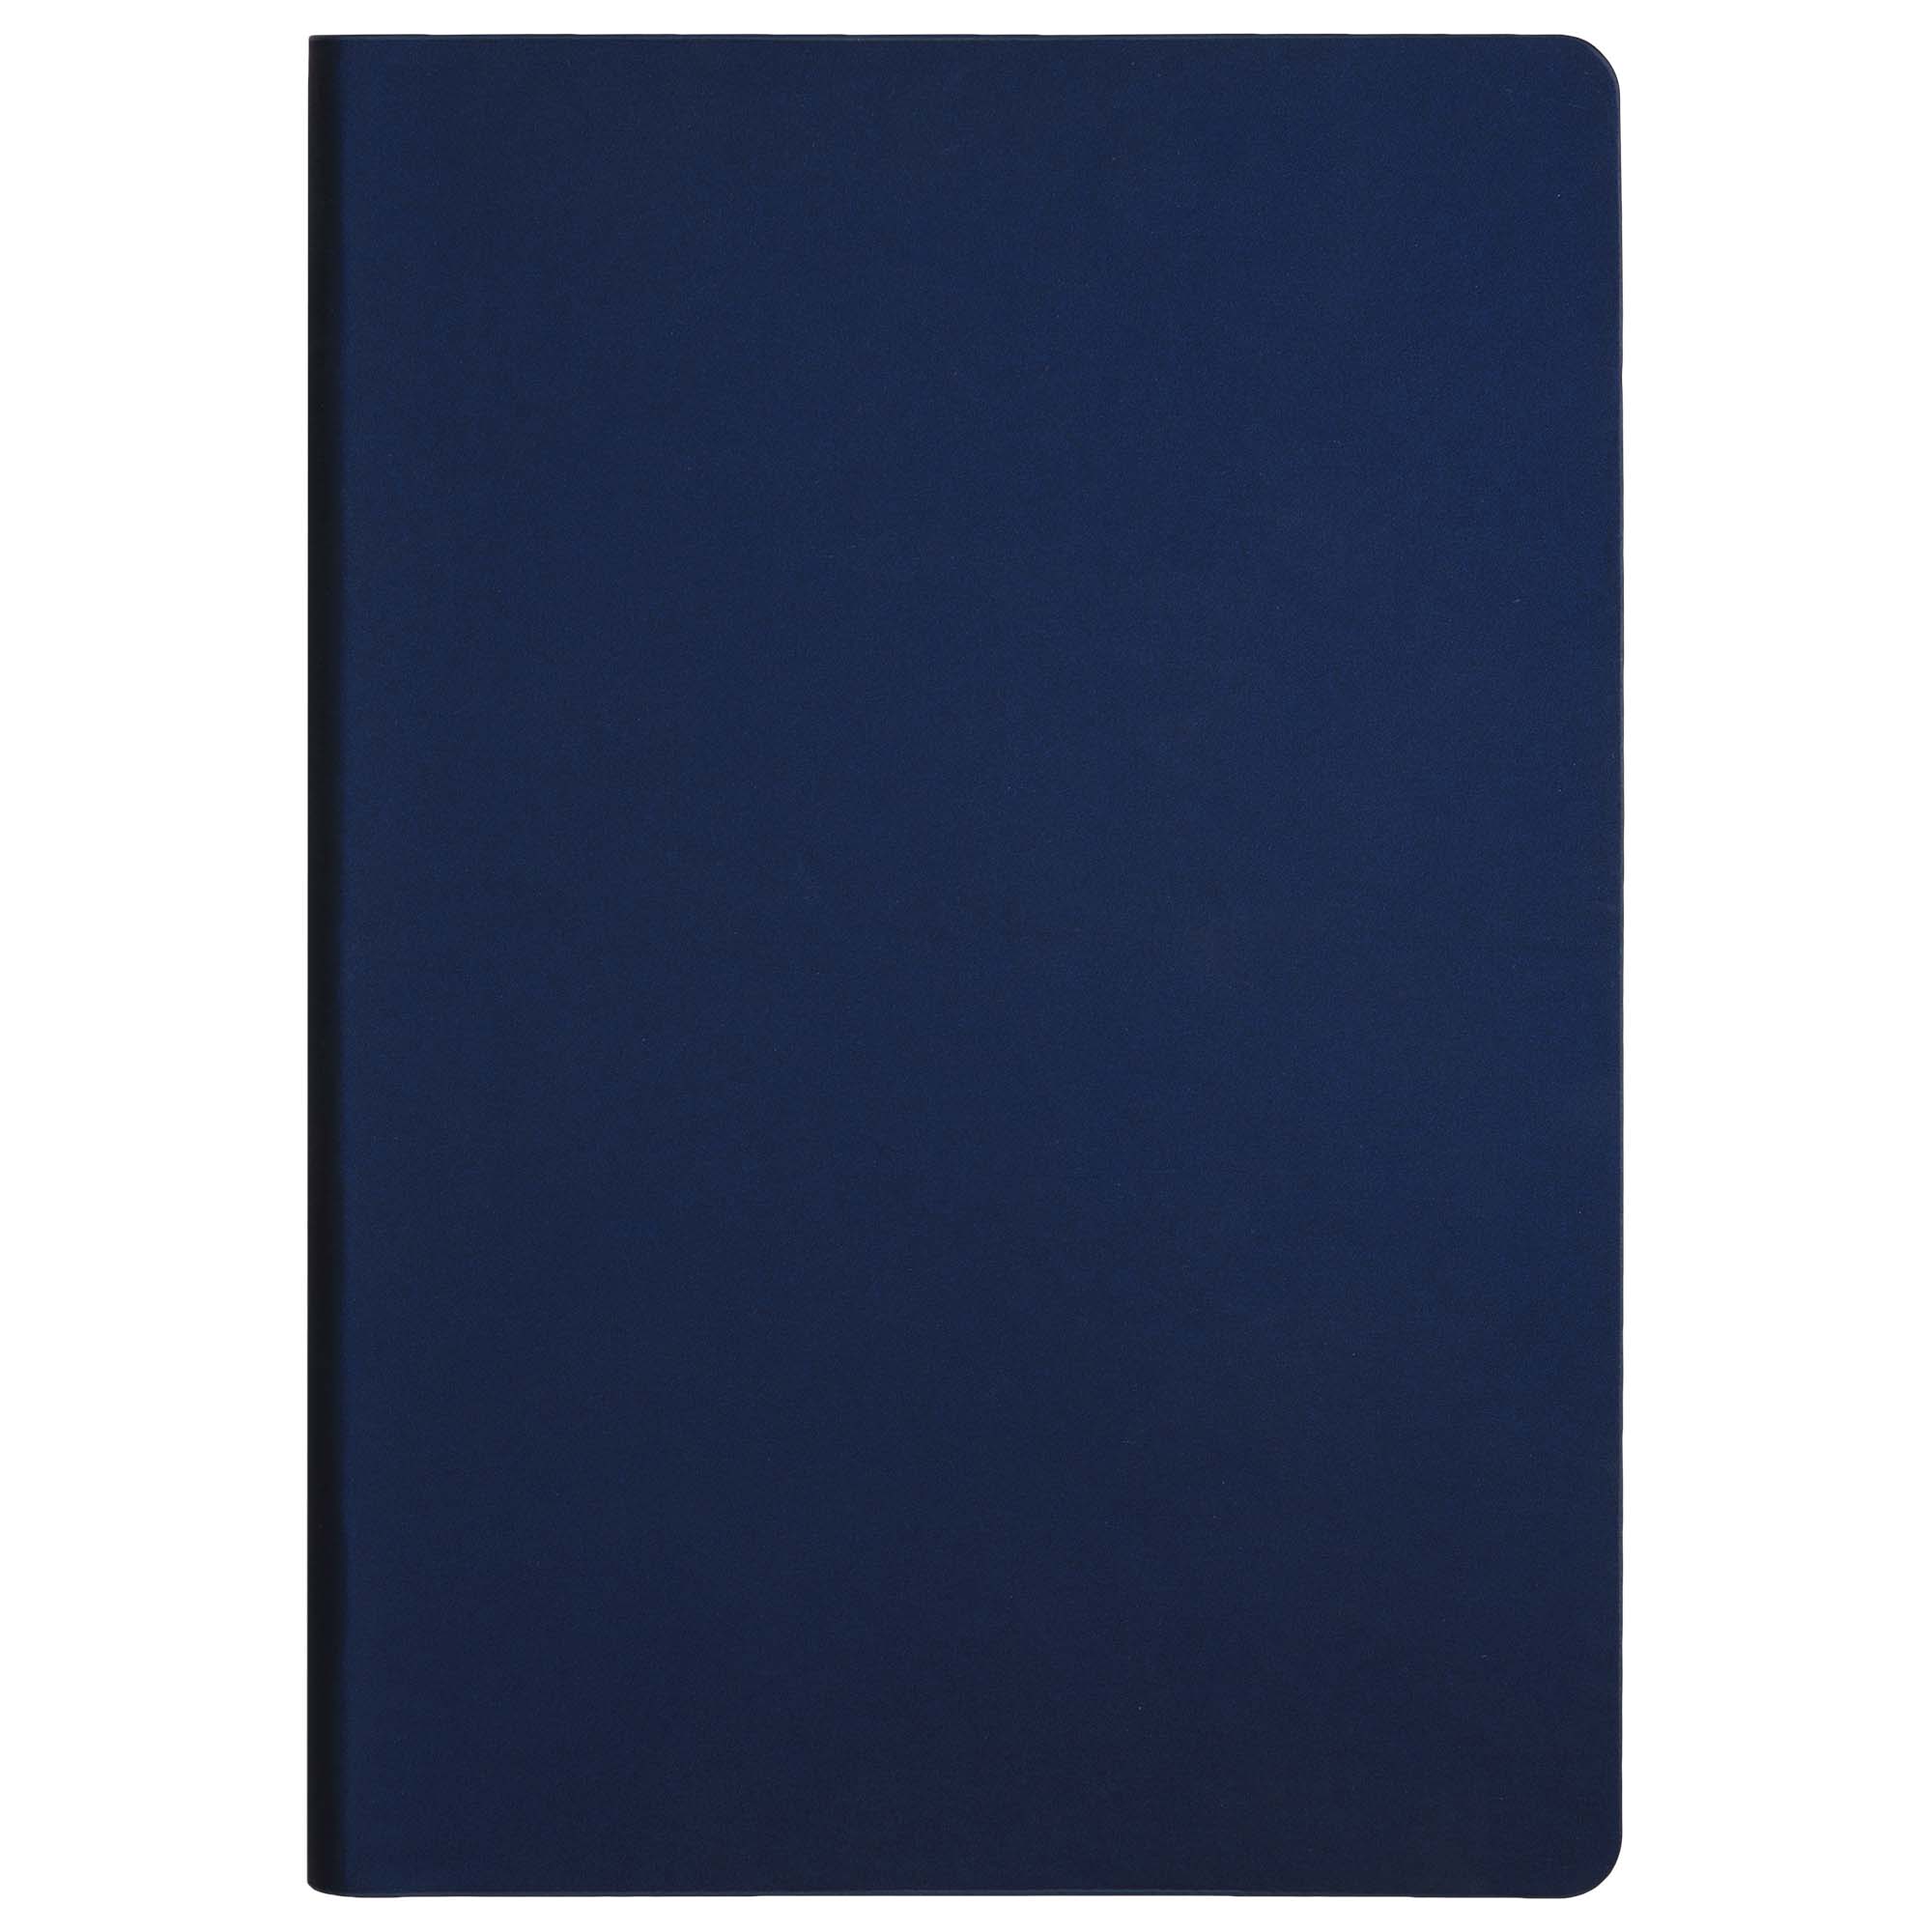 Ежедневник Star недатированный, синий (без упаковки, без стикера, с черной подложкой, без прокраса уреза)